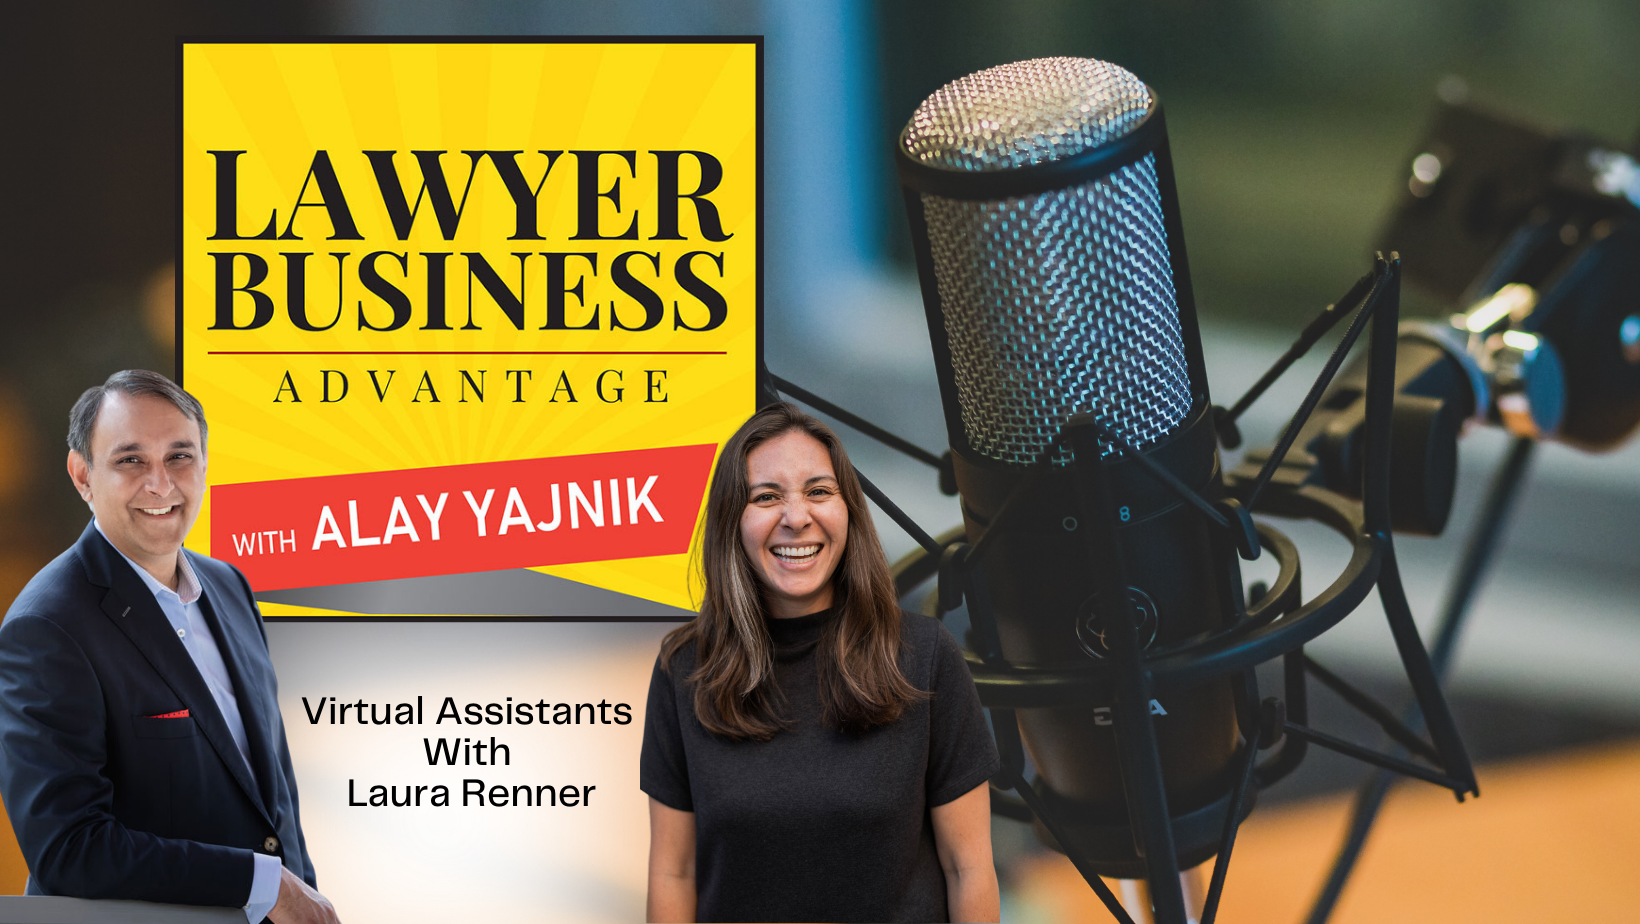 Lawyer Business Advantage with Alay Yajnik